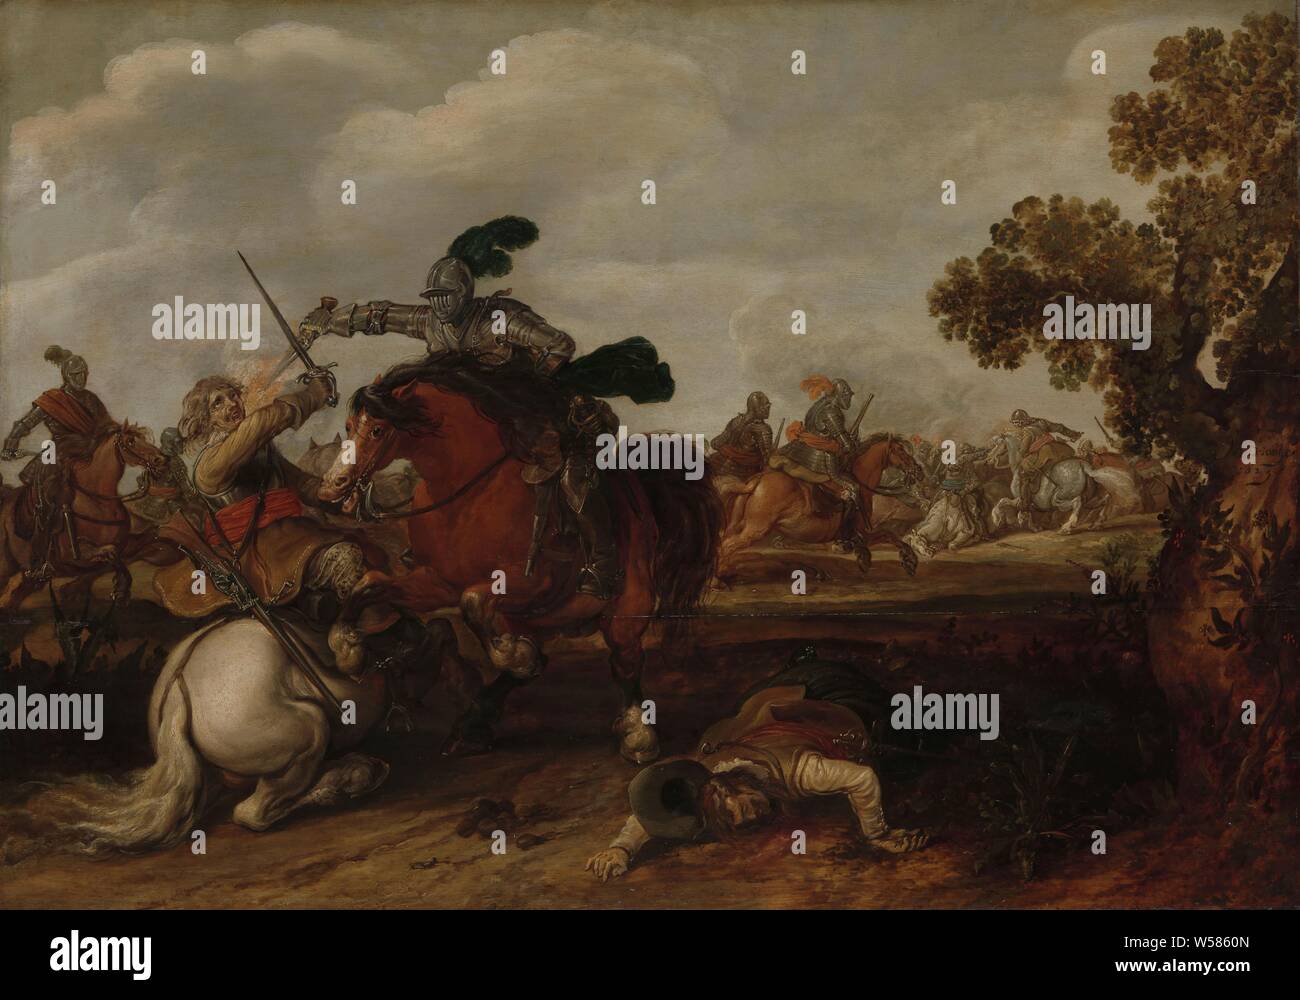 Eine Kavallerie, Reiter kämpfen. Ein Reiter in der Rüstung schießt mit seinem Gewehr auf einen Reiter auf einem weißen Pferd. Im Vordergrund liegt der Körper eines gefallenen Menschen, im Hintergrund die Schlacht tobt, Kampf, Kämpfen im Allgemeinen (Kavallerie, Reiter), Pferd werfen Reiter, Jan Martszen de Jonge (auf Objekt erwähnt), 1629, Panel, Ölfarbe (Lack), h 75,5 cm × W107 cm d: 6,5 cm Stockfoto